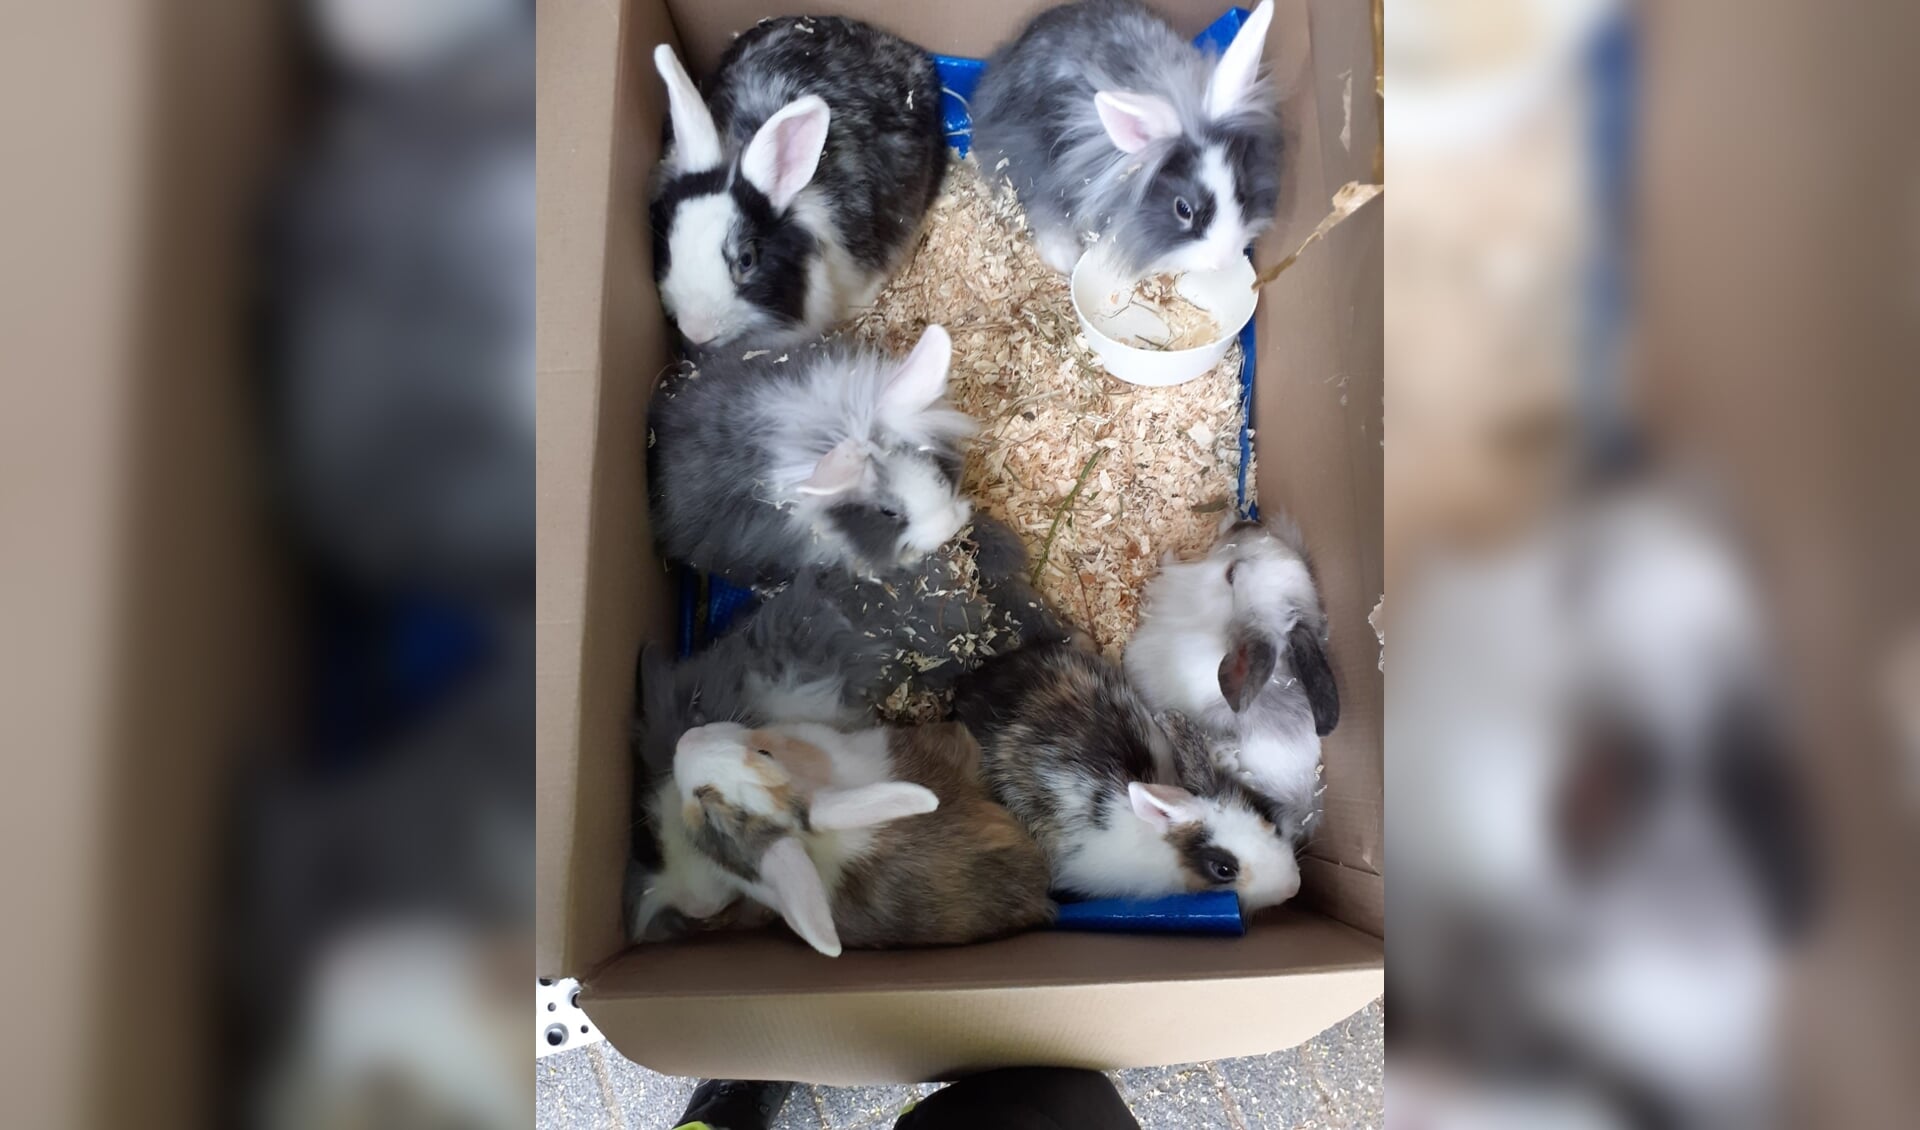 De konijnen zaten in een doos. (Foto: aangeleverd)